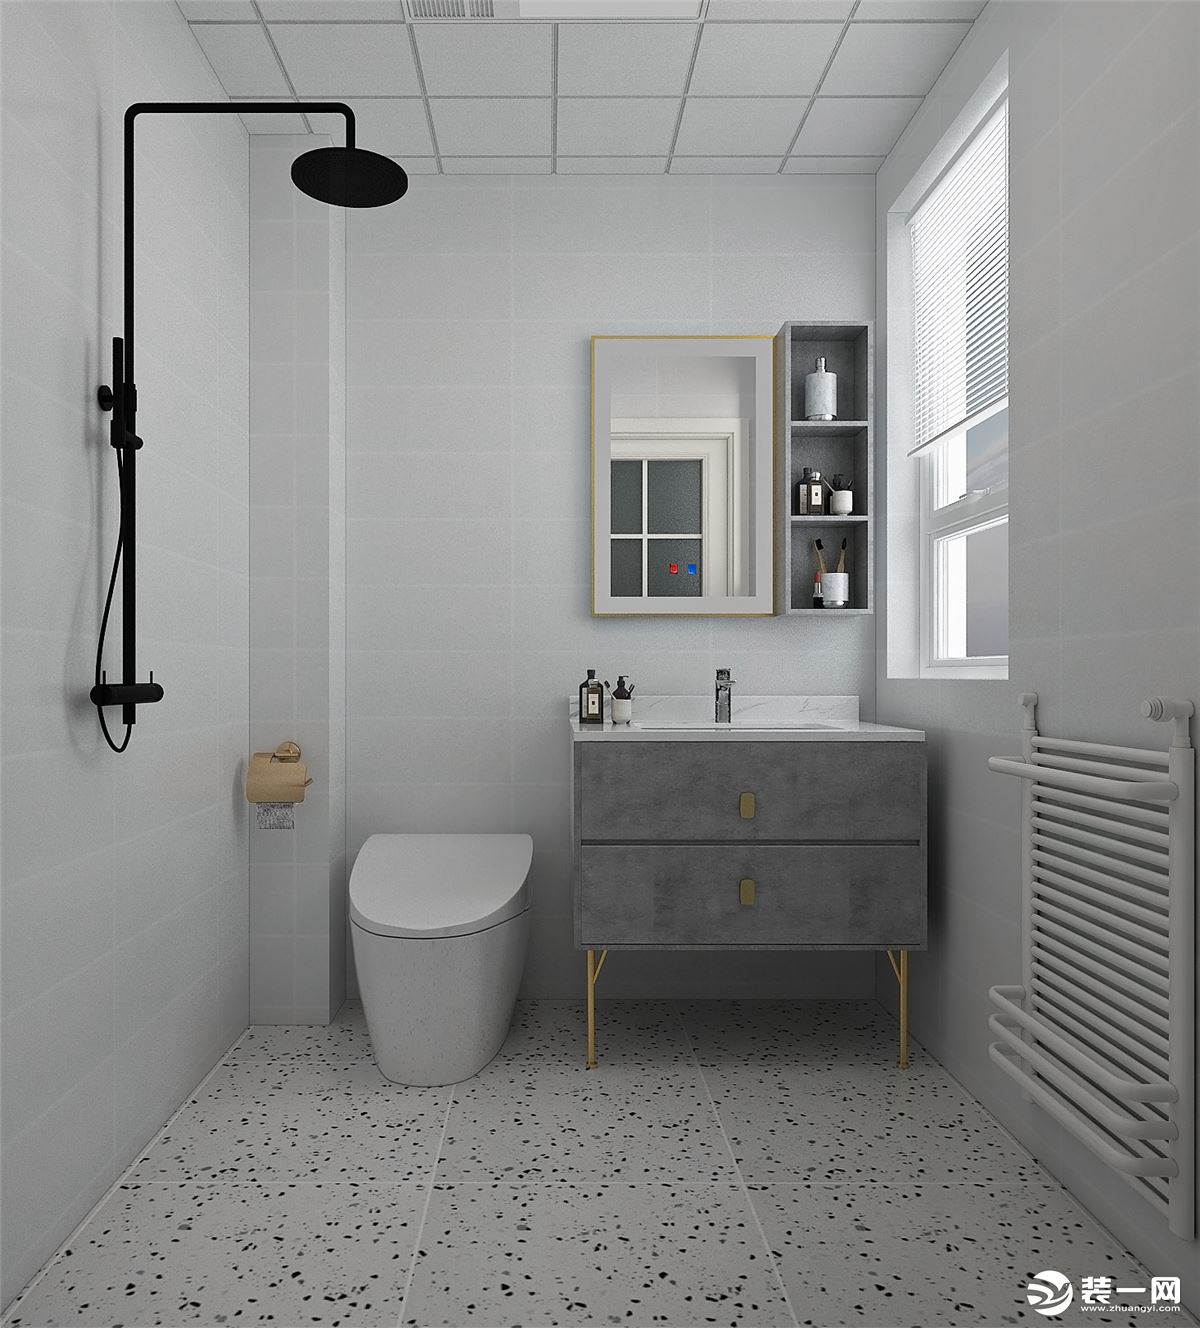 灰色墙砖突显出了整个空间的高级感，浴室柜上水泥木纹图案搭配金属元素，突显出高级的轻奢感。